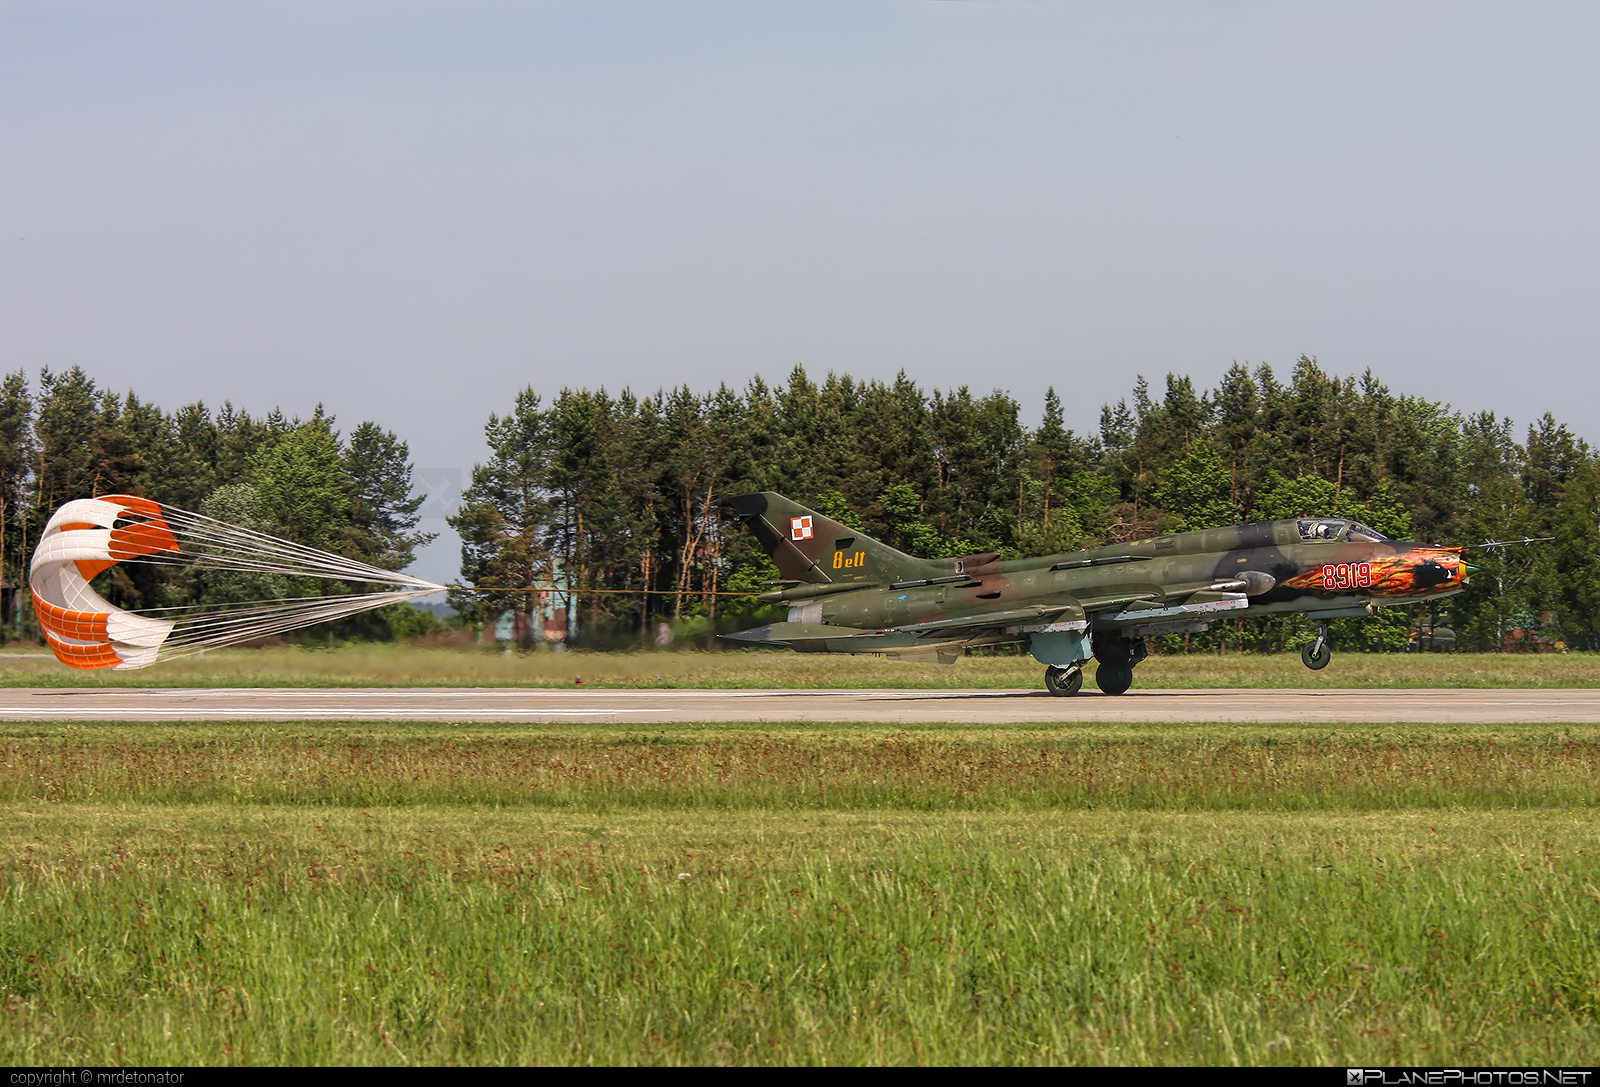 Sukhoi Su-22M4 - 8919 operated by Siły Powietrzne Rzeczypospolitej Polskiej (Polish Air Force) #polishairforce #silypowietrzne #su22 #su22m4 #sukhoi #sukhoi22 #sukhoi22m4 #sukhoisu22 #sukhoisu22m4